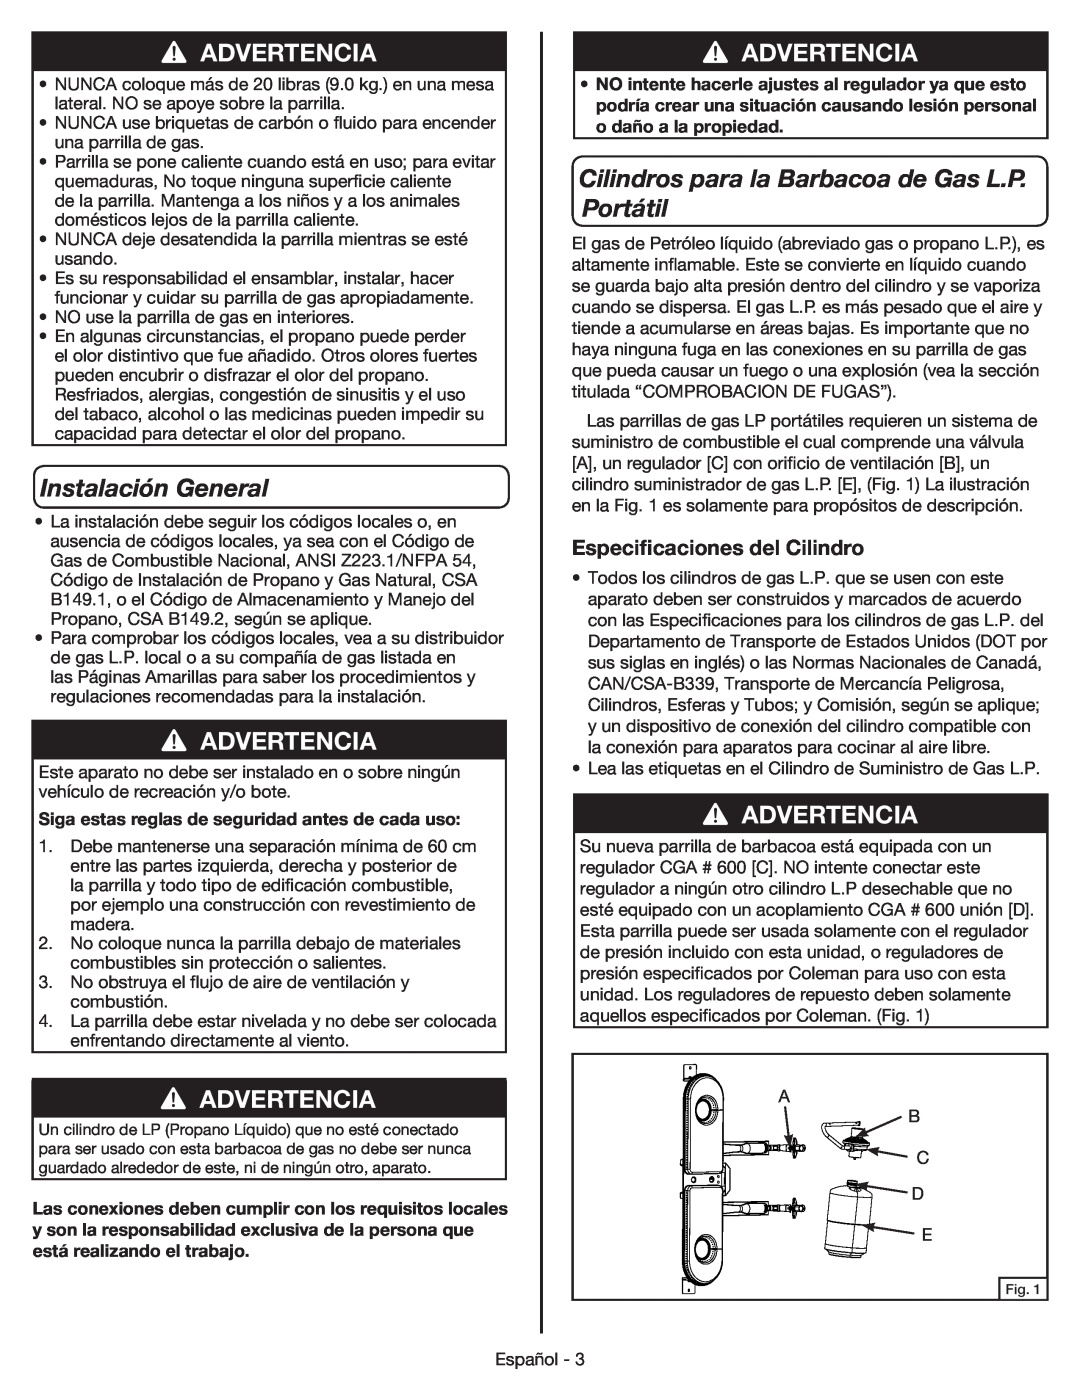 Coleman 9959 manual Instalación General, Cilindros para la Barbacoa de Gas L.P. Portátil, Especificaciones del Cilindro 